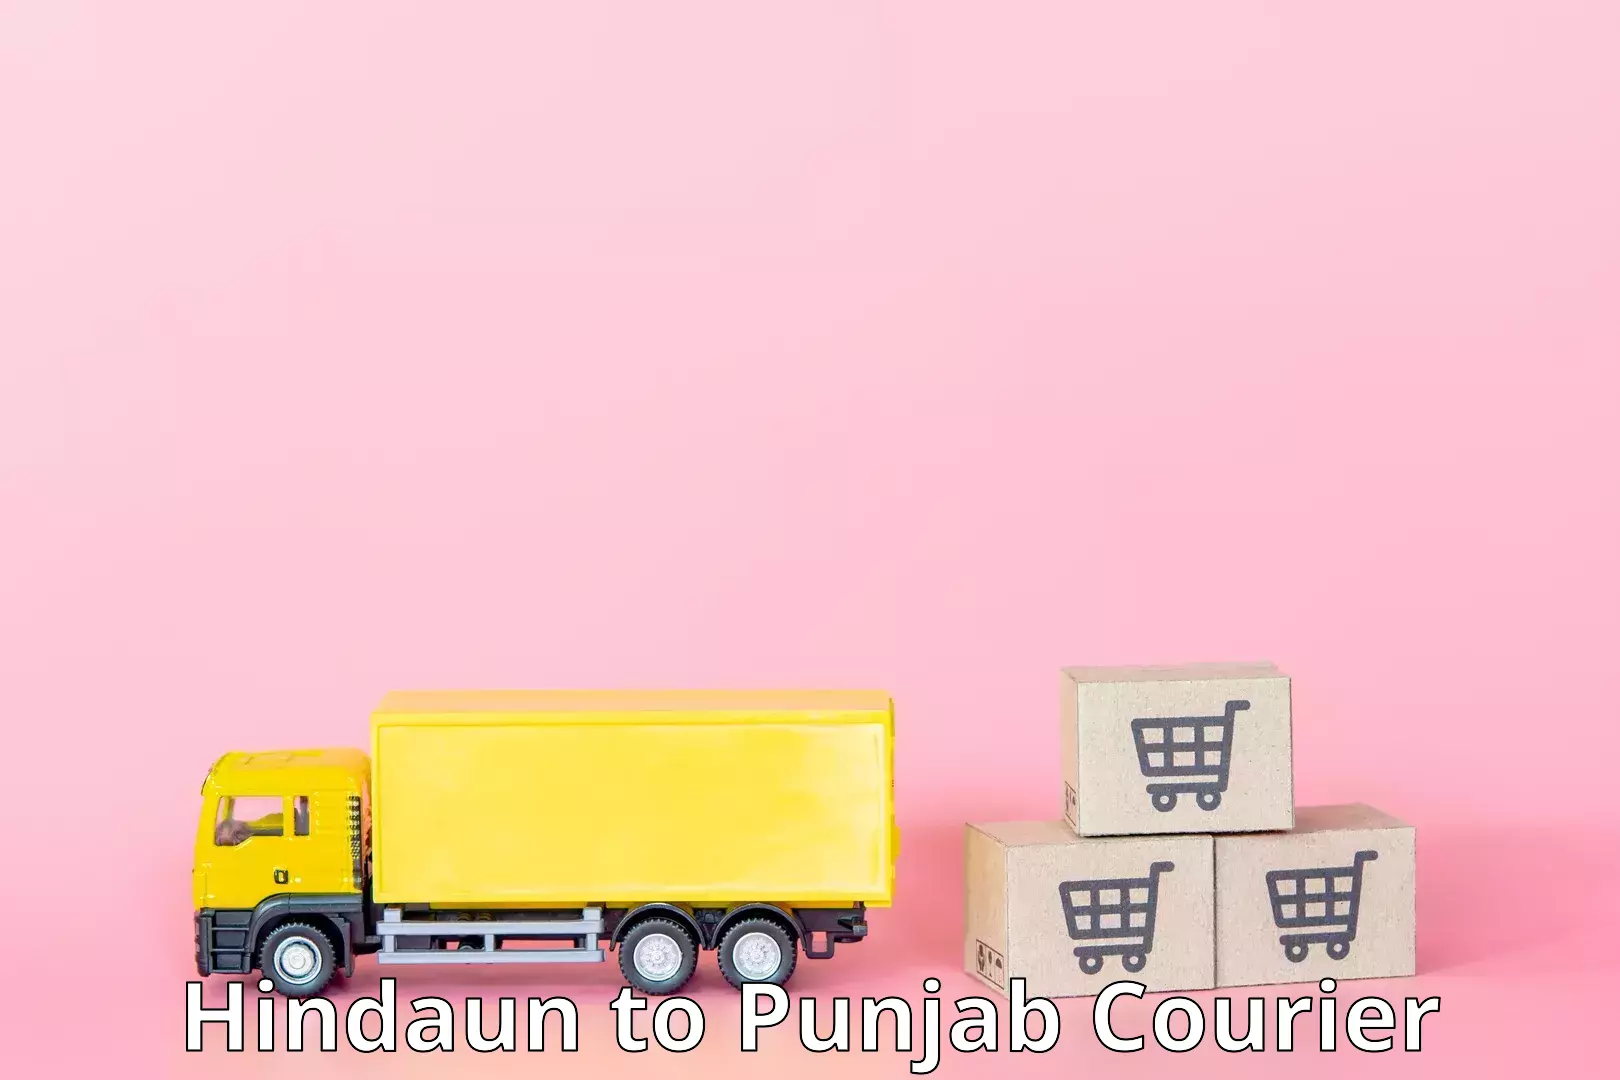 High-priority parcel service Hindaun to Punjab